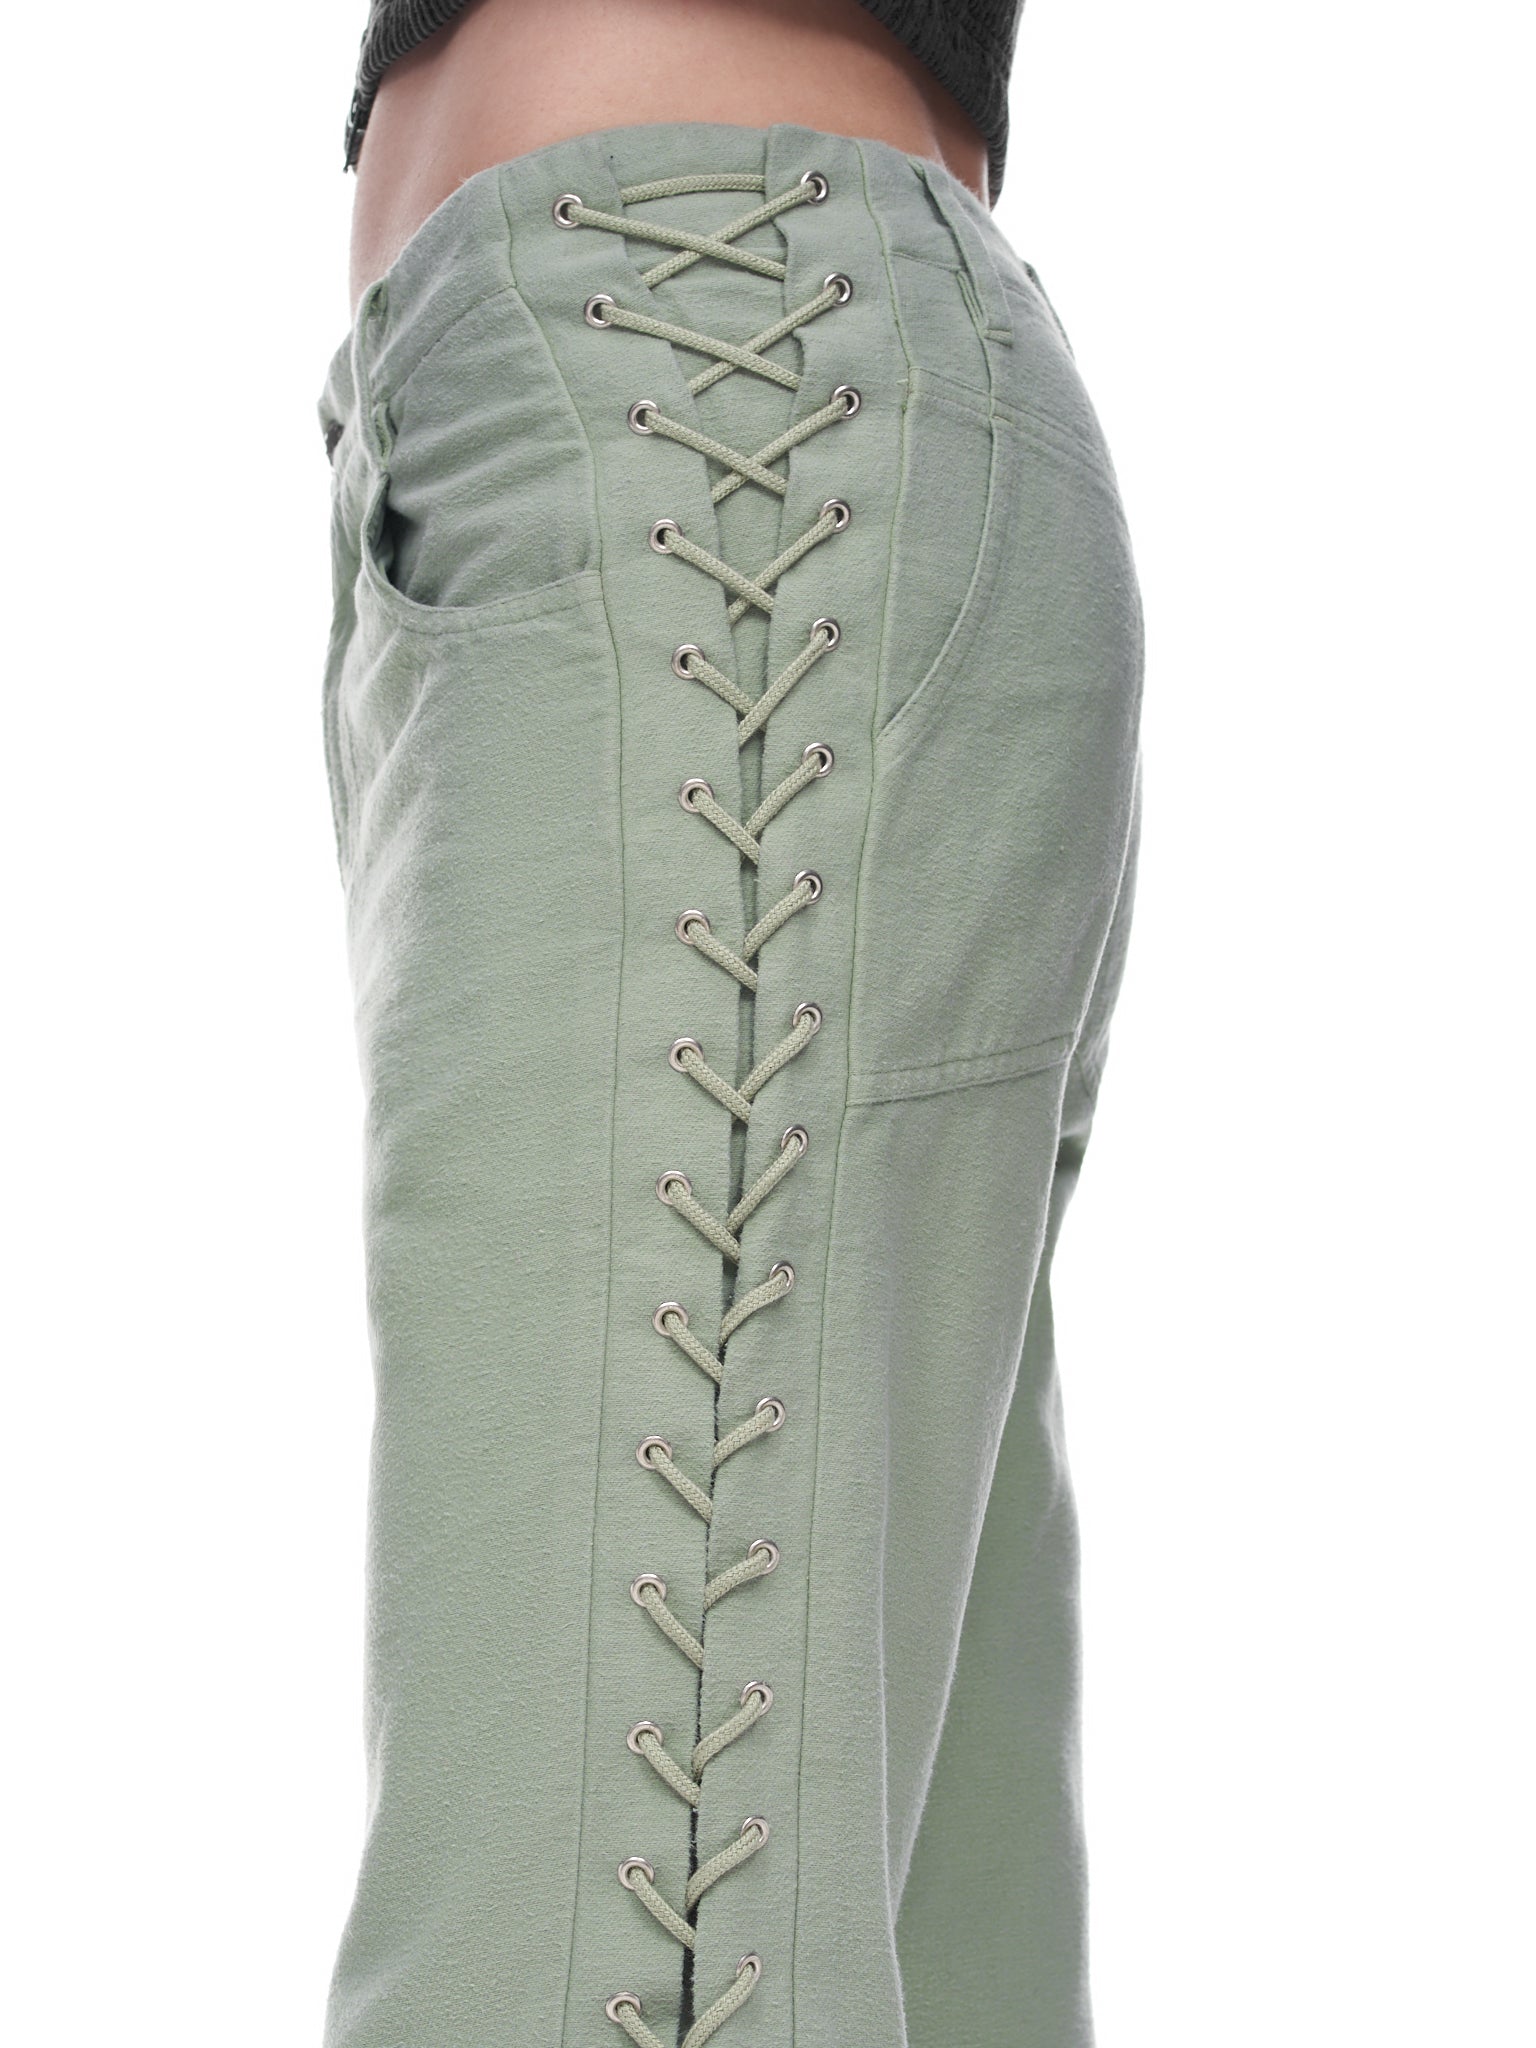 Eckhaus Latta Laced Pants | H. Lorenzo - detail 3